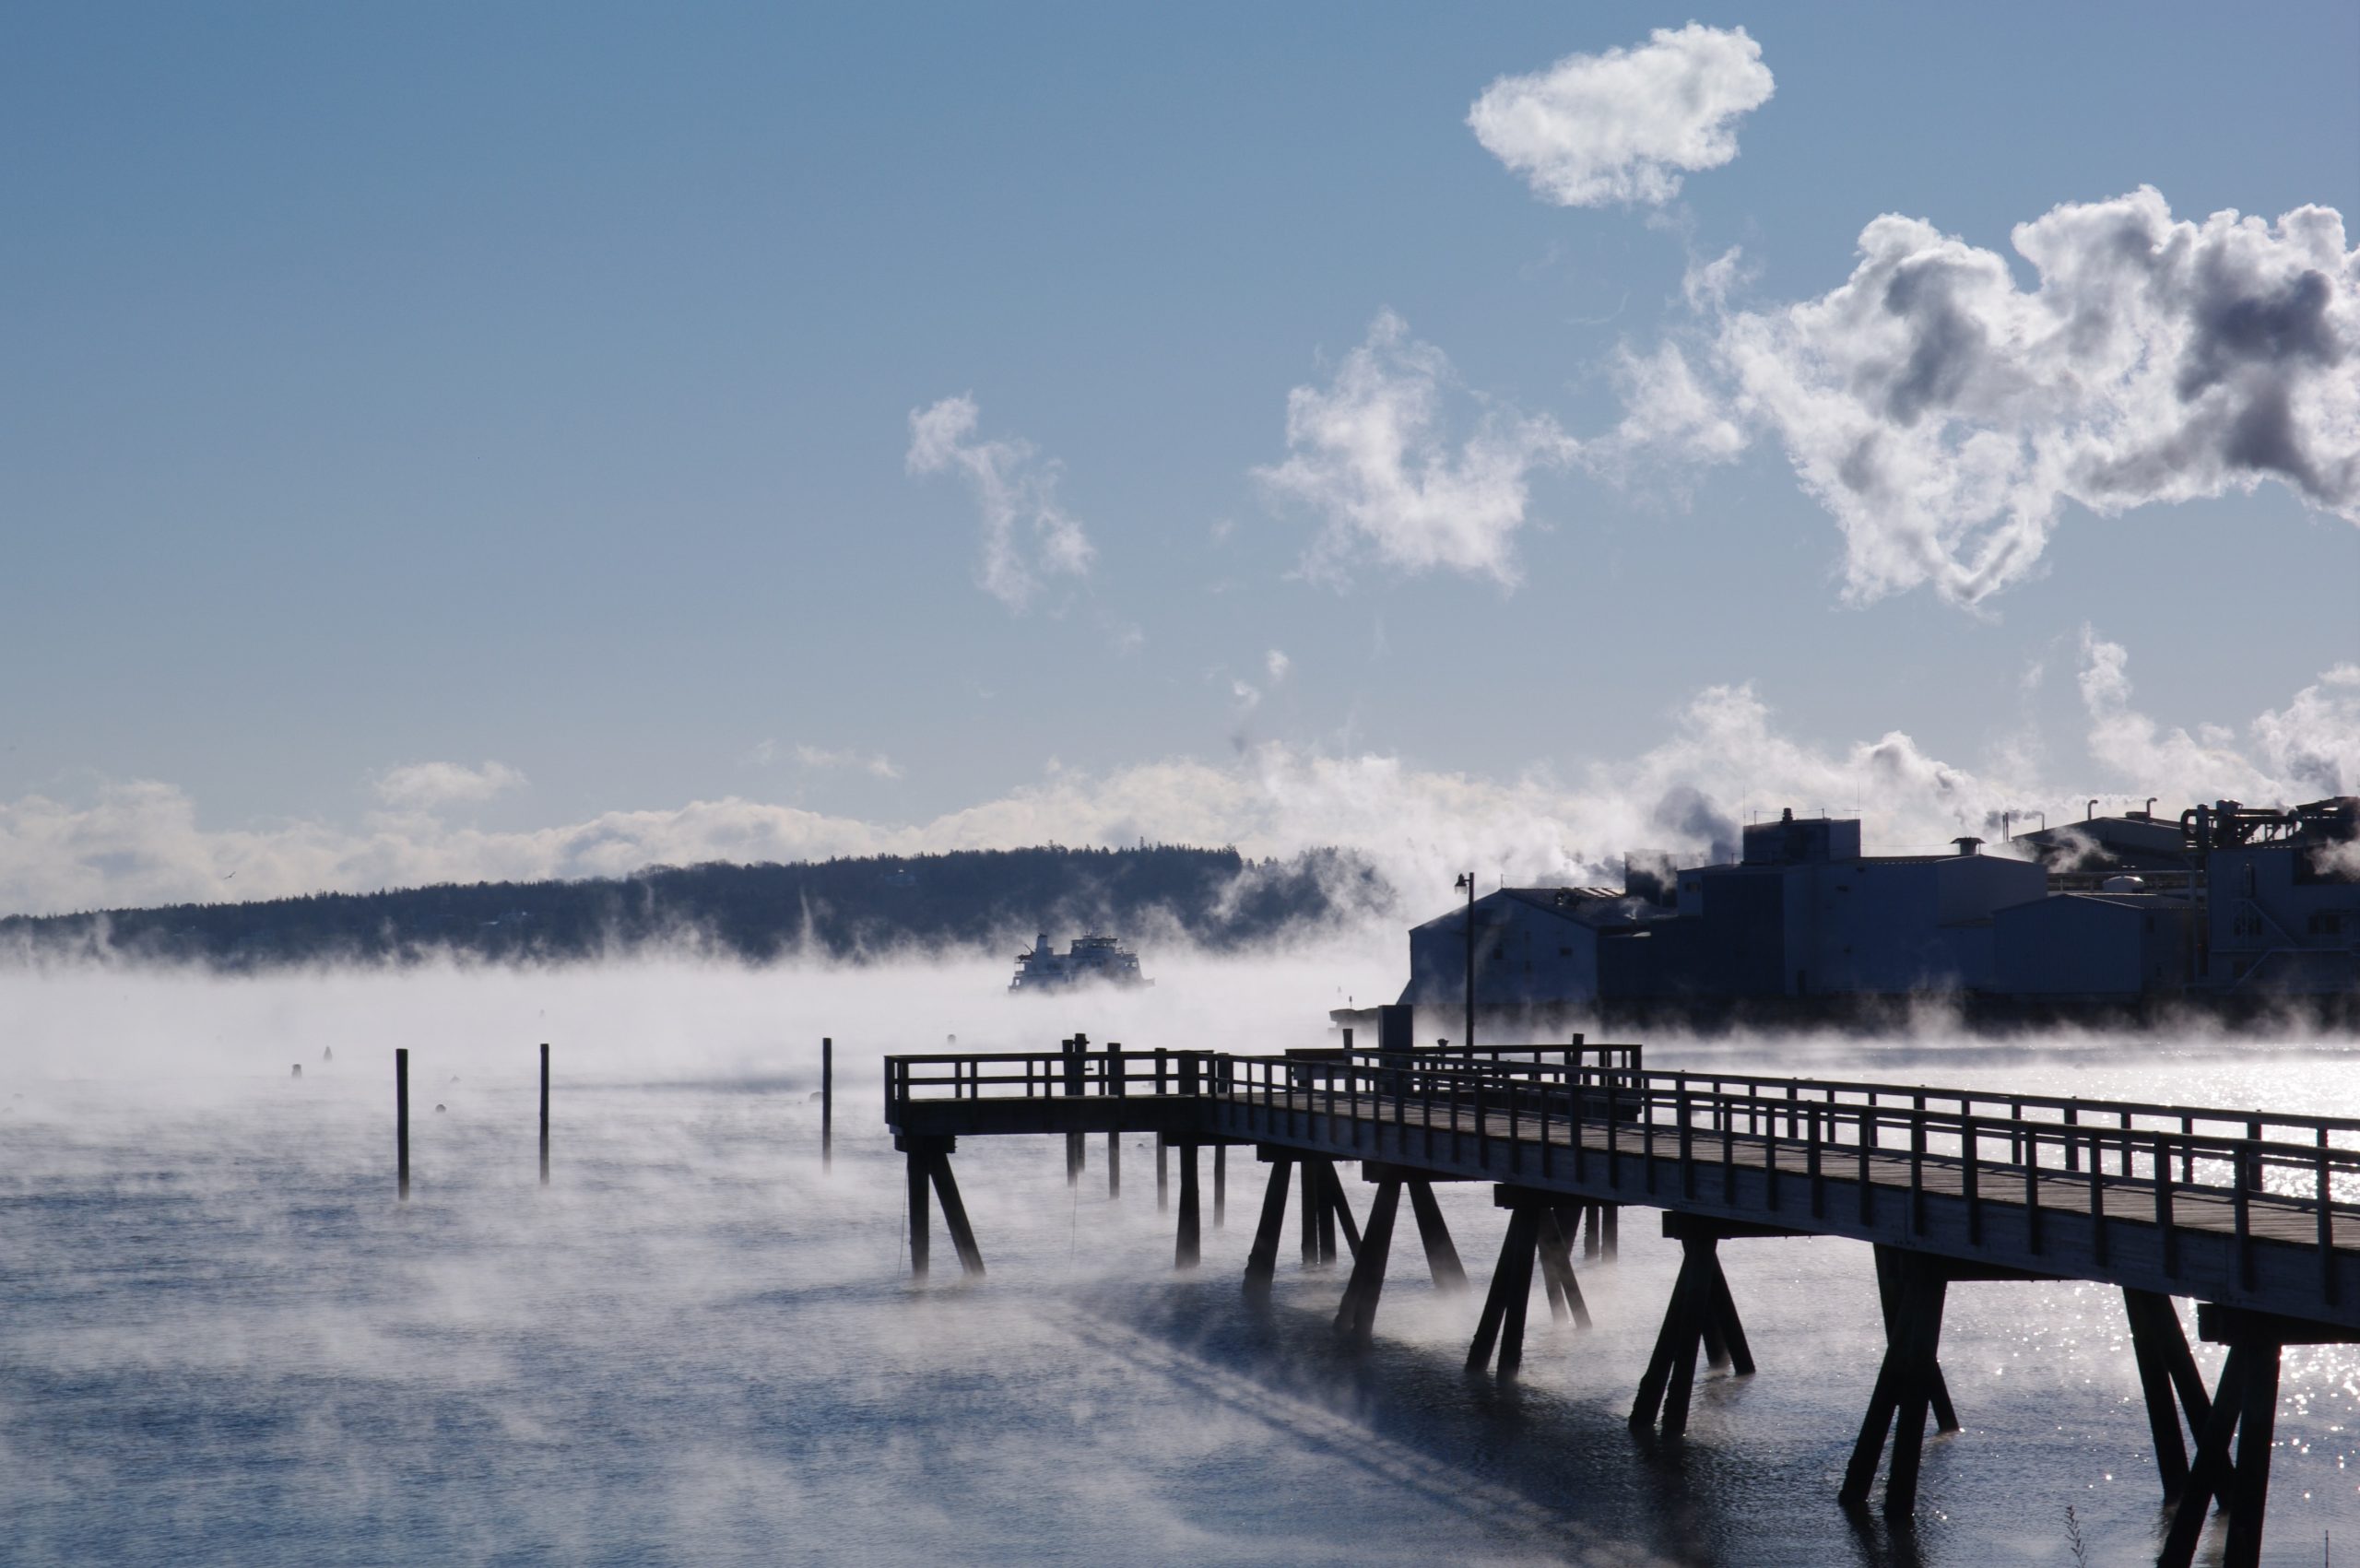 Photographie d'un long quai en bois sur un lac gelé. À l'extrême droite, on aperçoit une grande usine. Le lac est couvert de fumée de givre et le ciel est d'un bleu clair avec des nuages blancs.